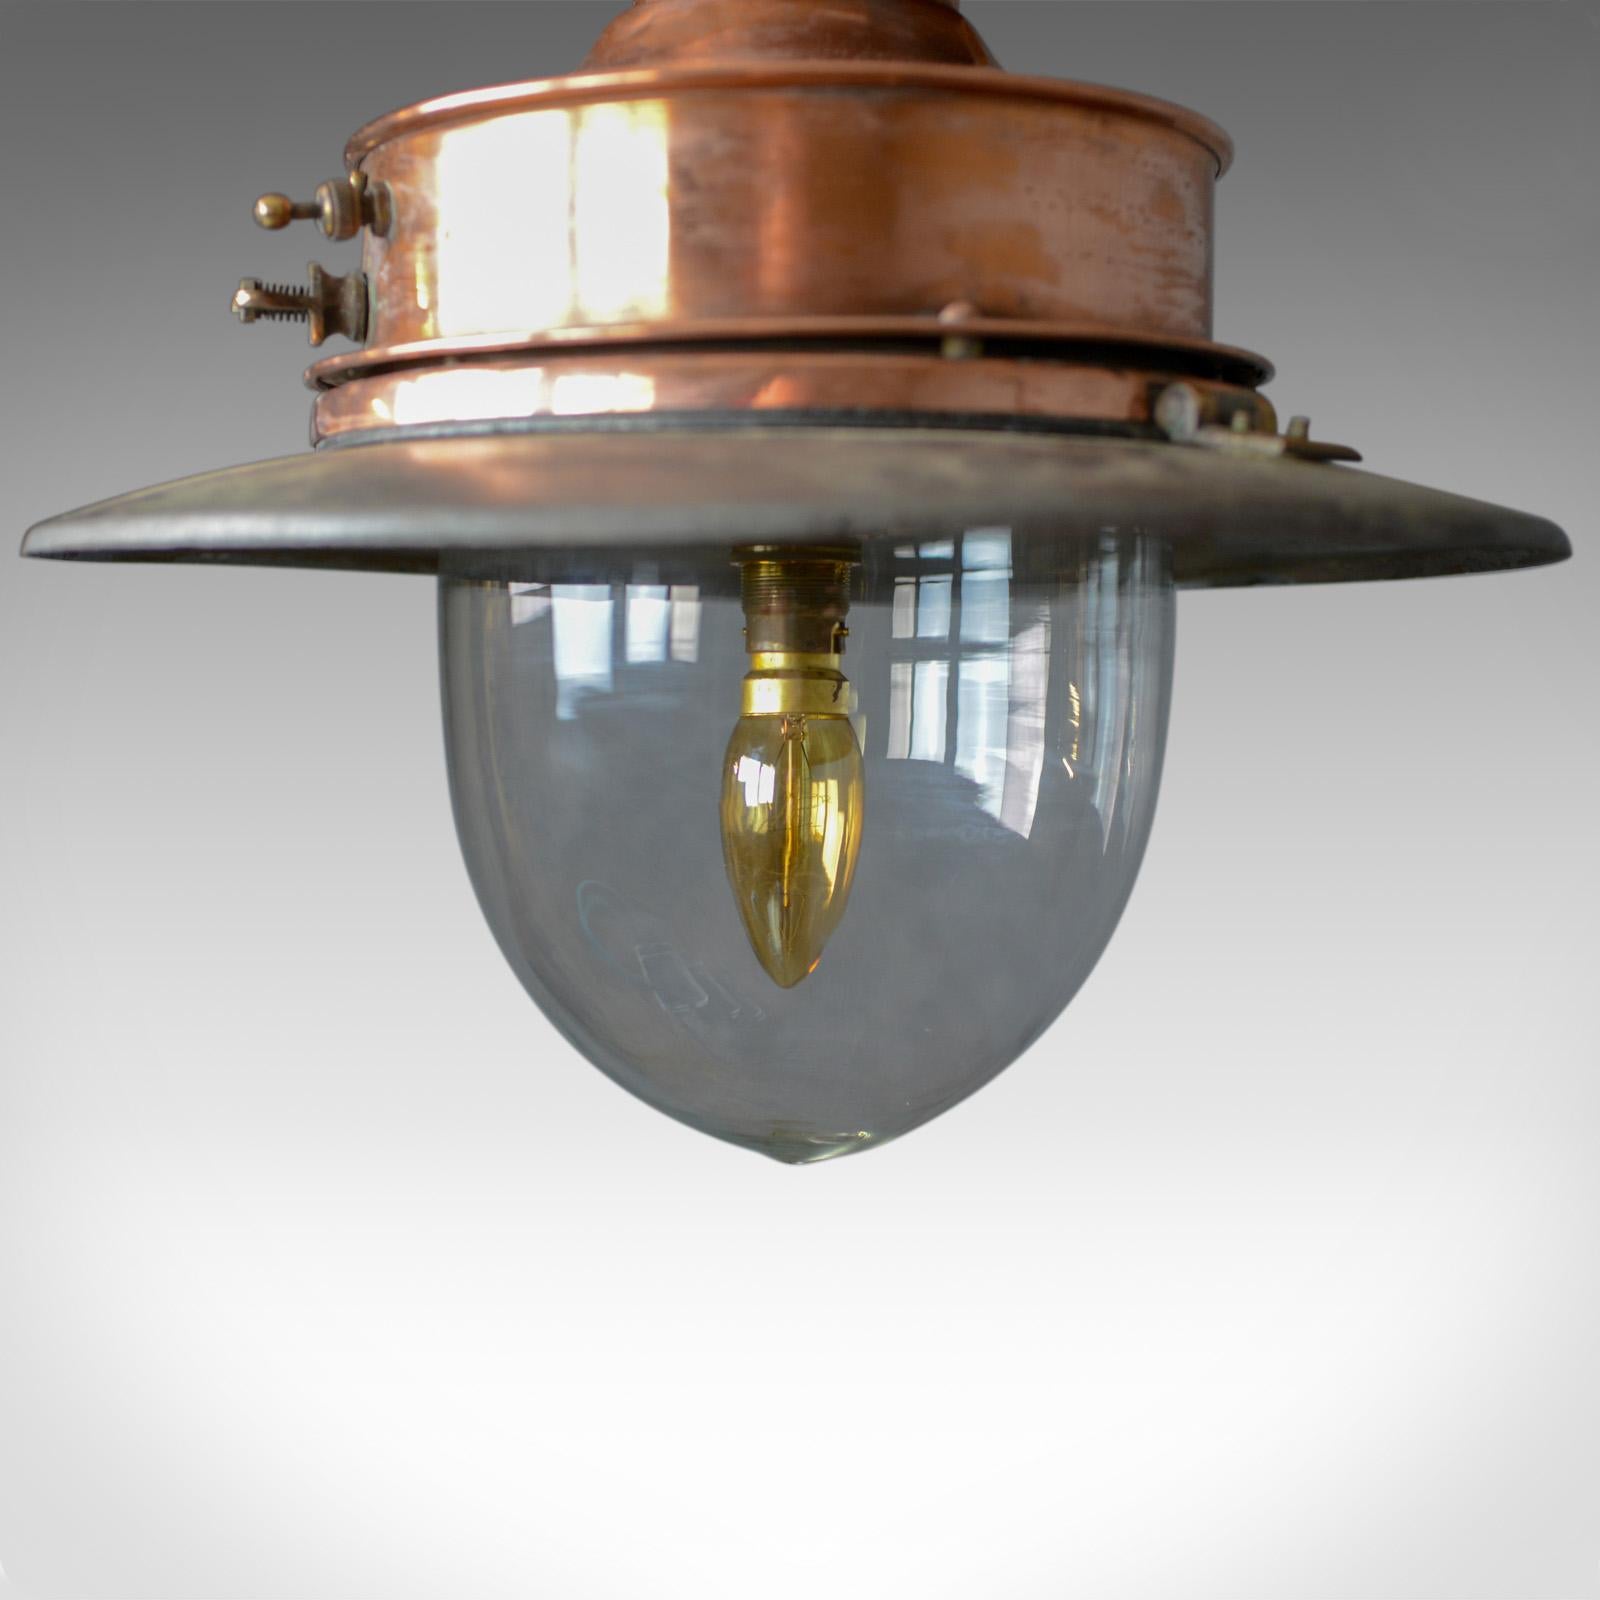 antique gas lantern